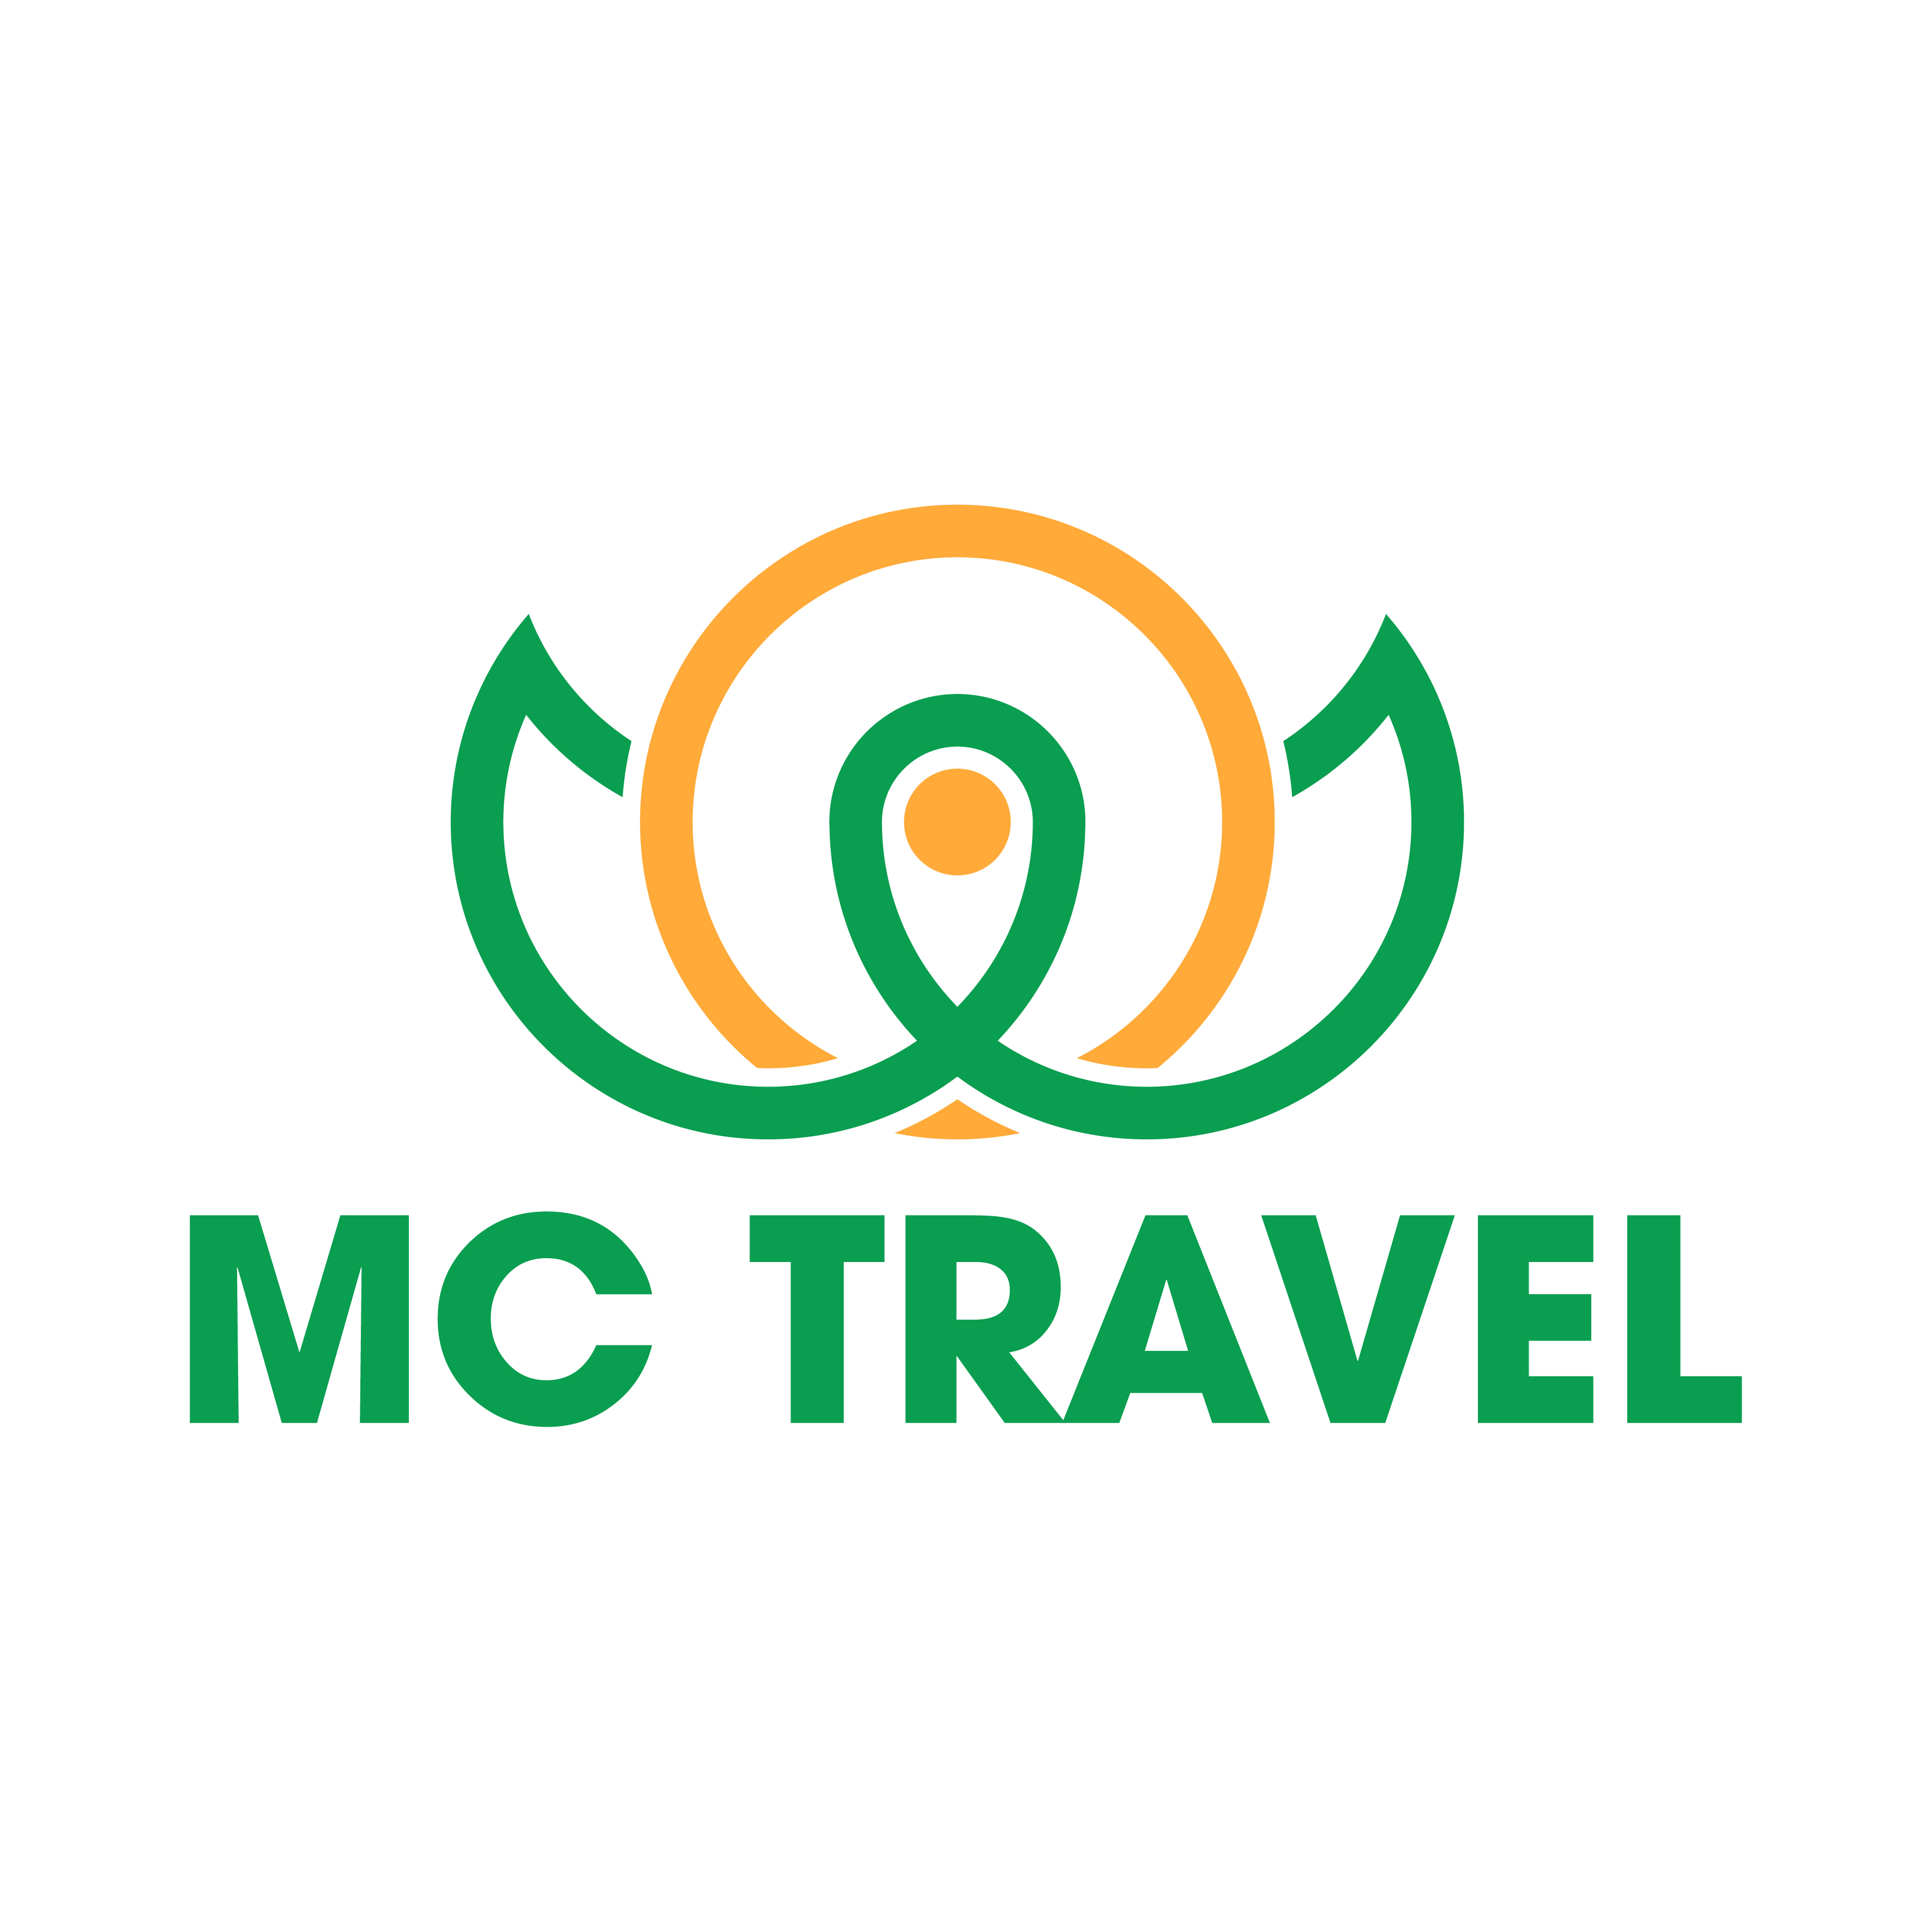 Thiết kế logo công ty du lịch